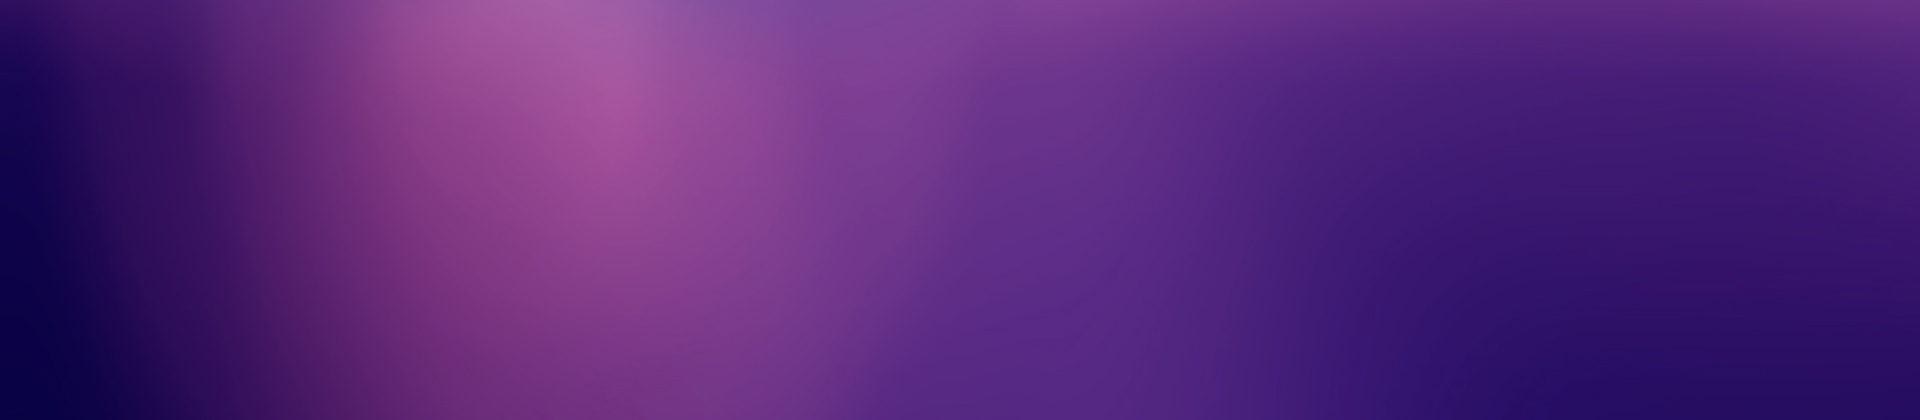 purpleblue